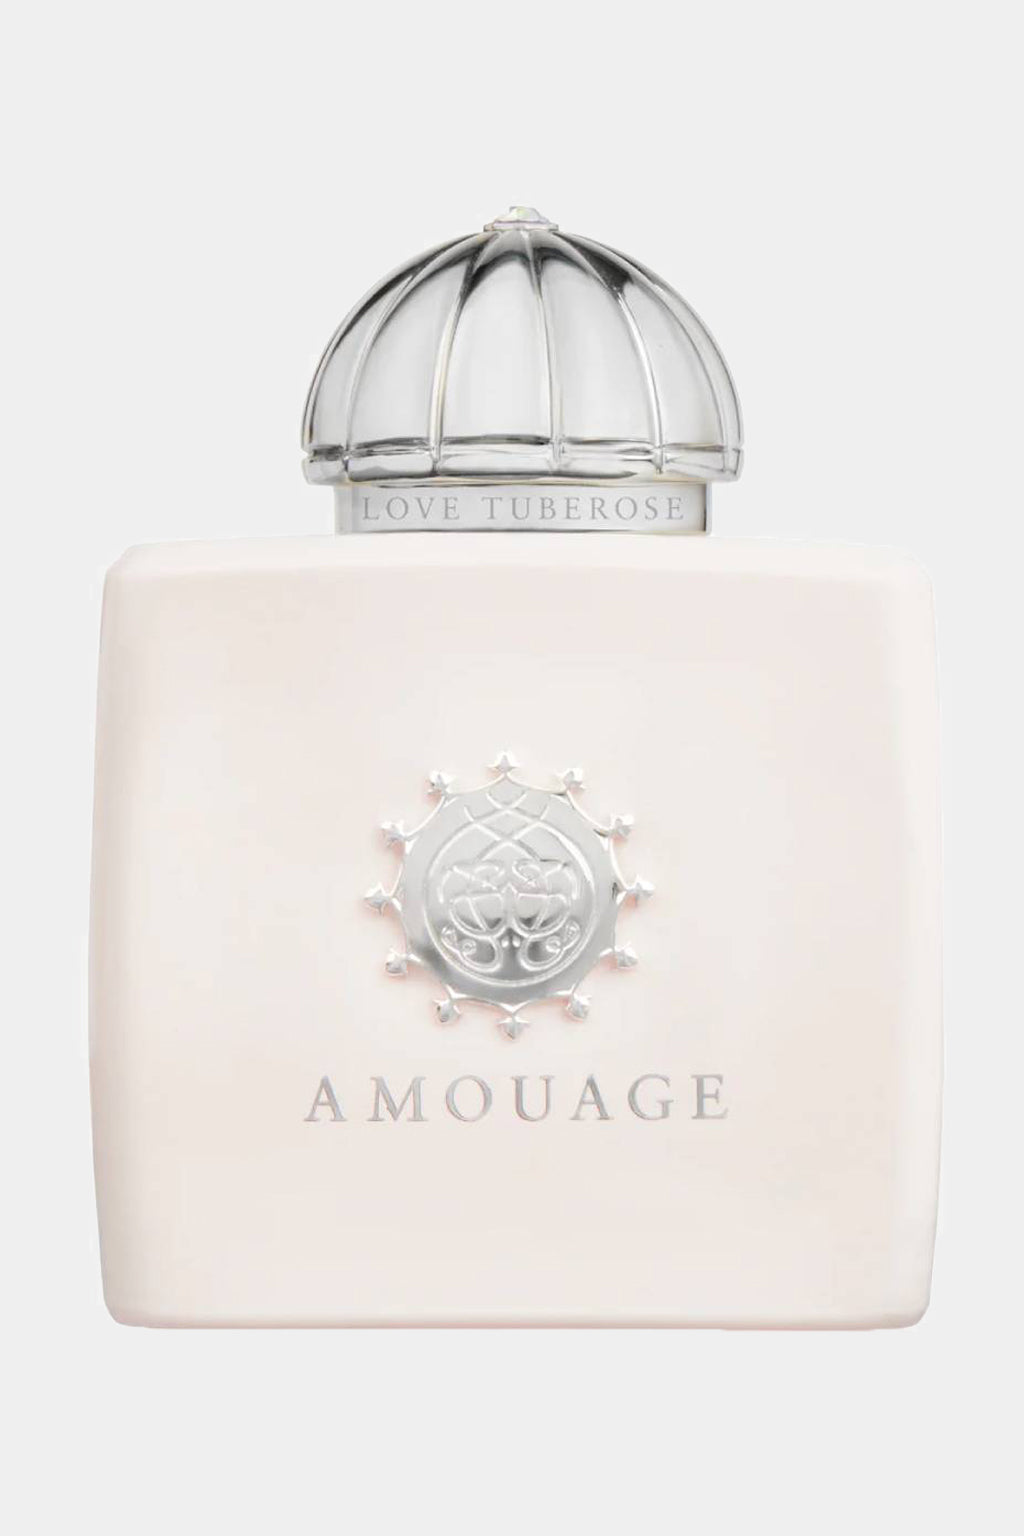 Amouage - Love Tuberose Eau de Parfum